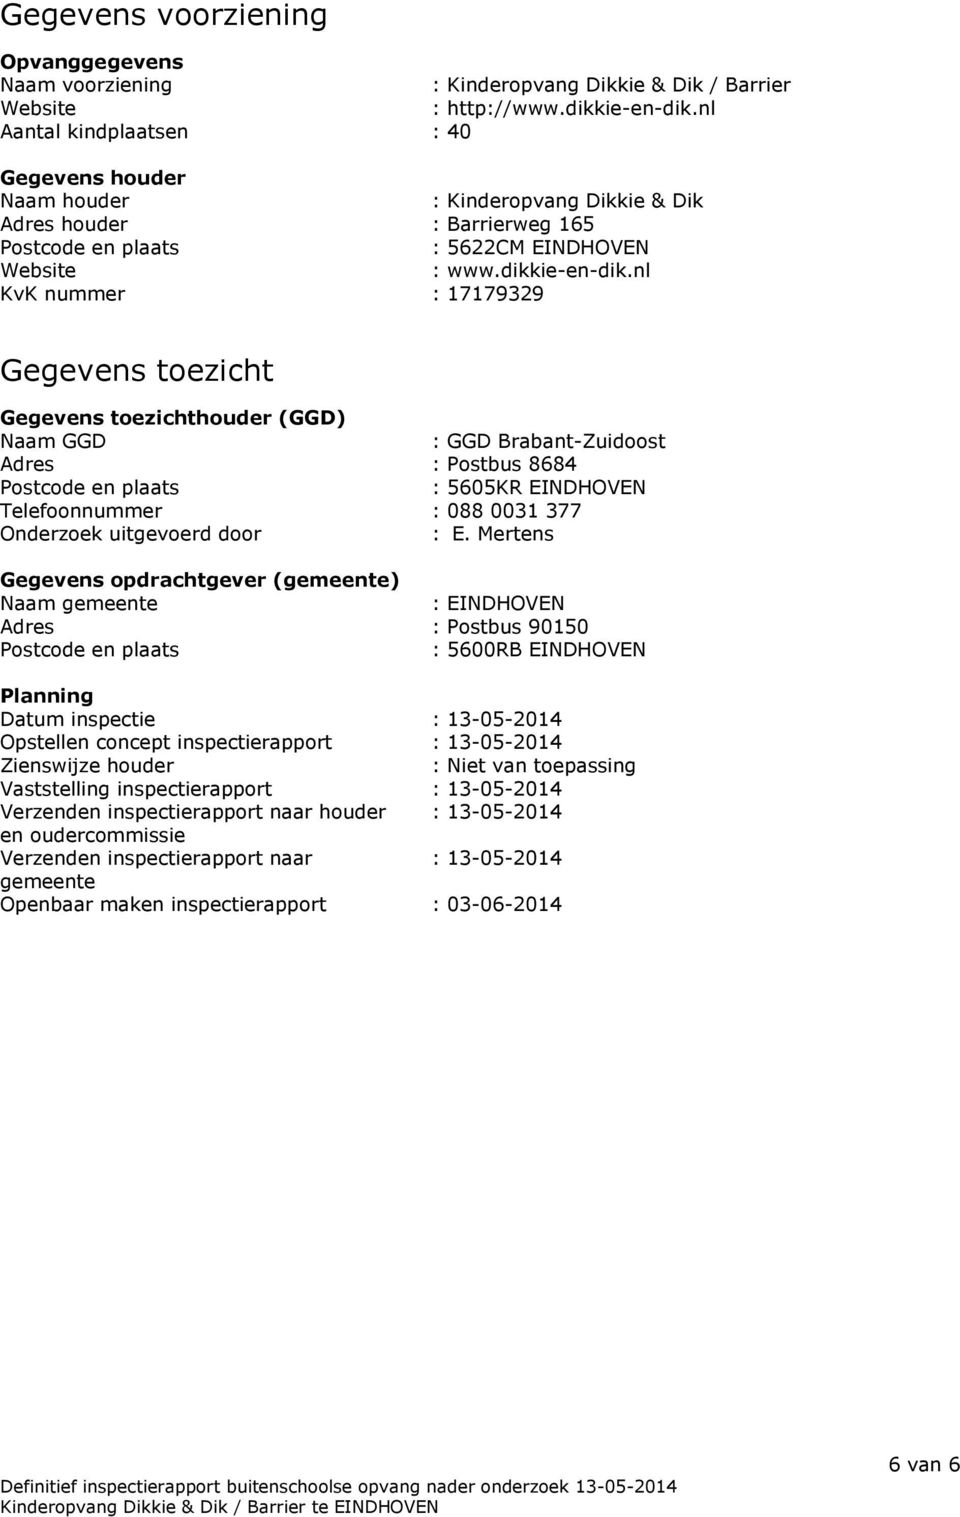 nl KvK nummer : 17179329 Gegevens toezicht Gegevens toezichthouder (GGD) Naam GGD : GGD Brabant-Zuidoost Adres : Postbus 8684 Postcode en plaats : 5605KR EINDHOVEN Telefoonnummer : 088 0031 377